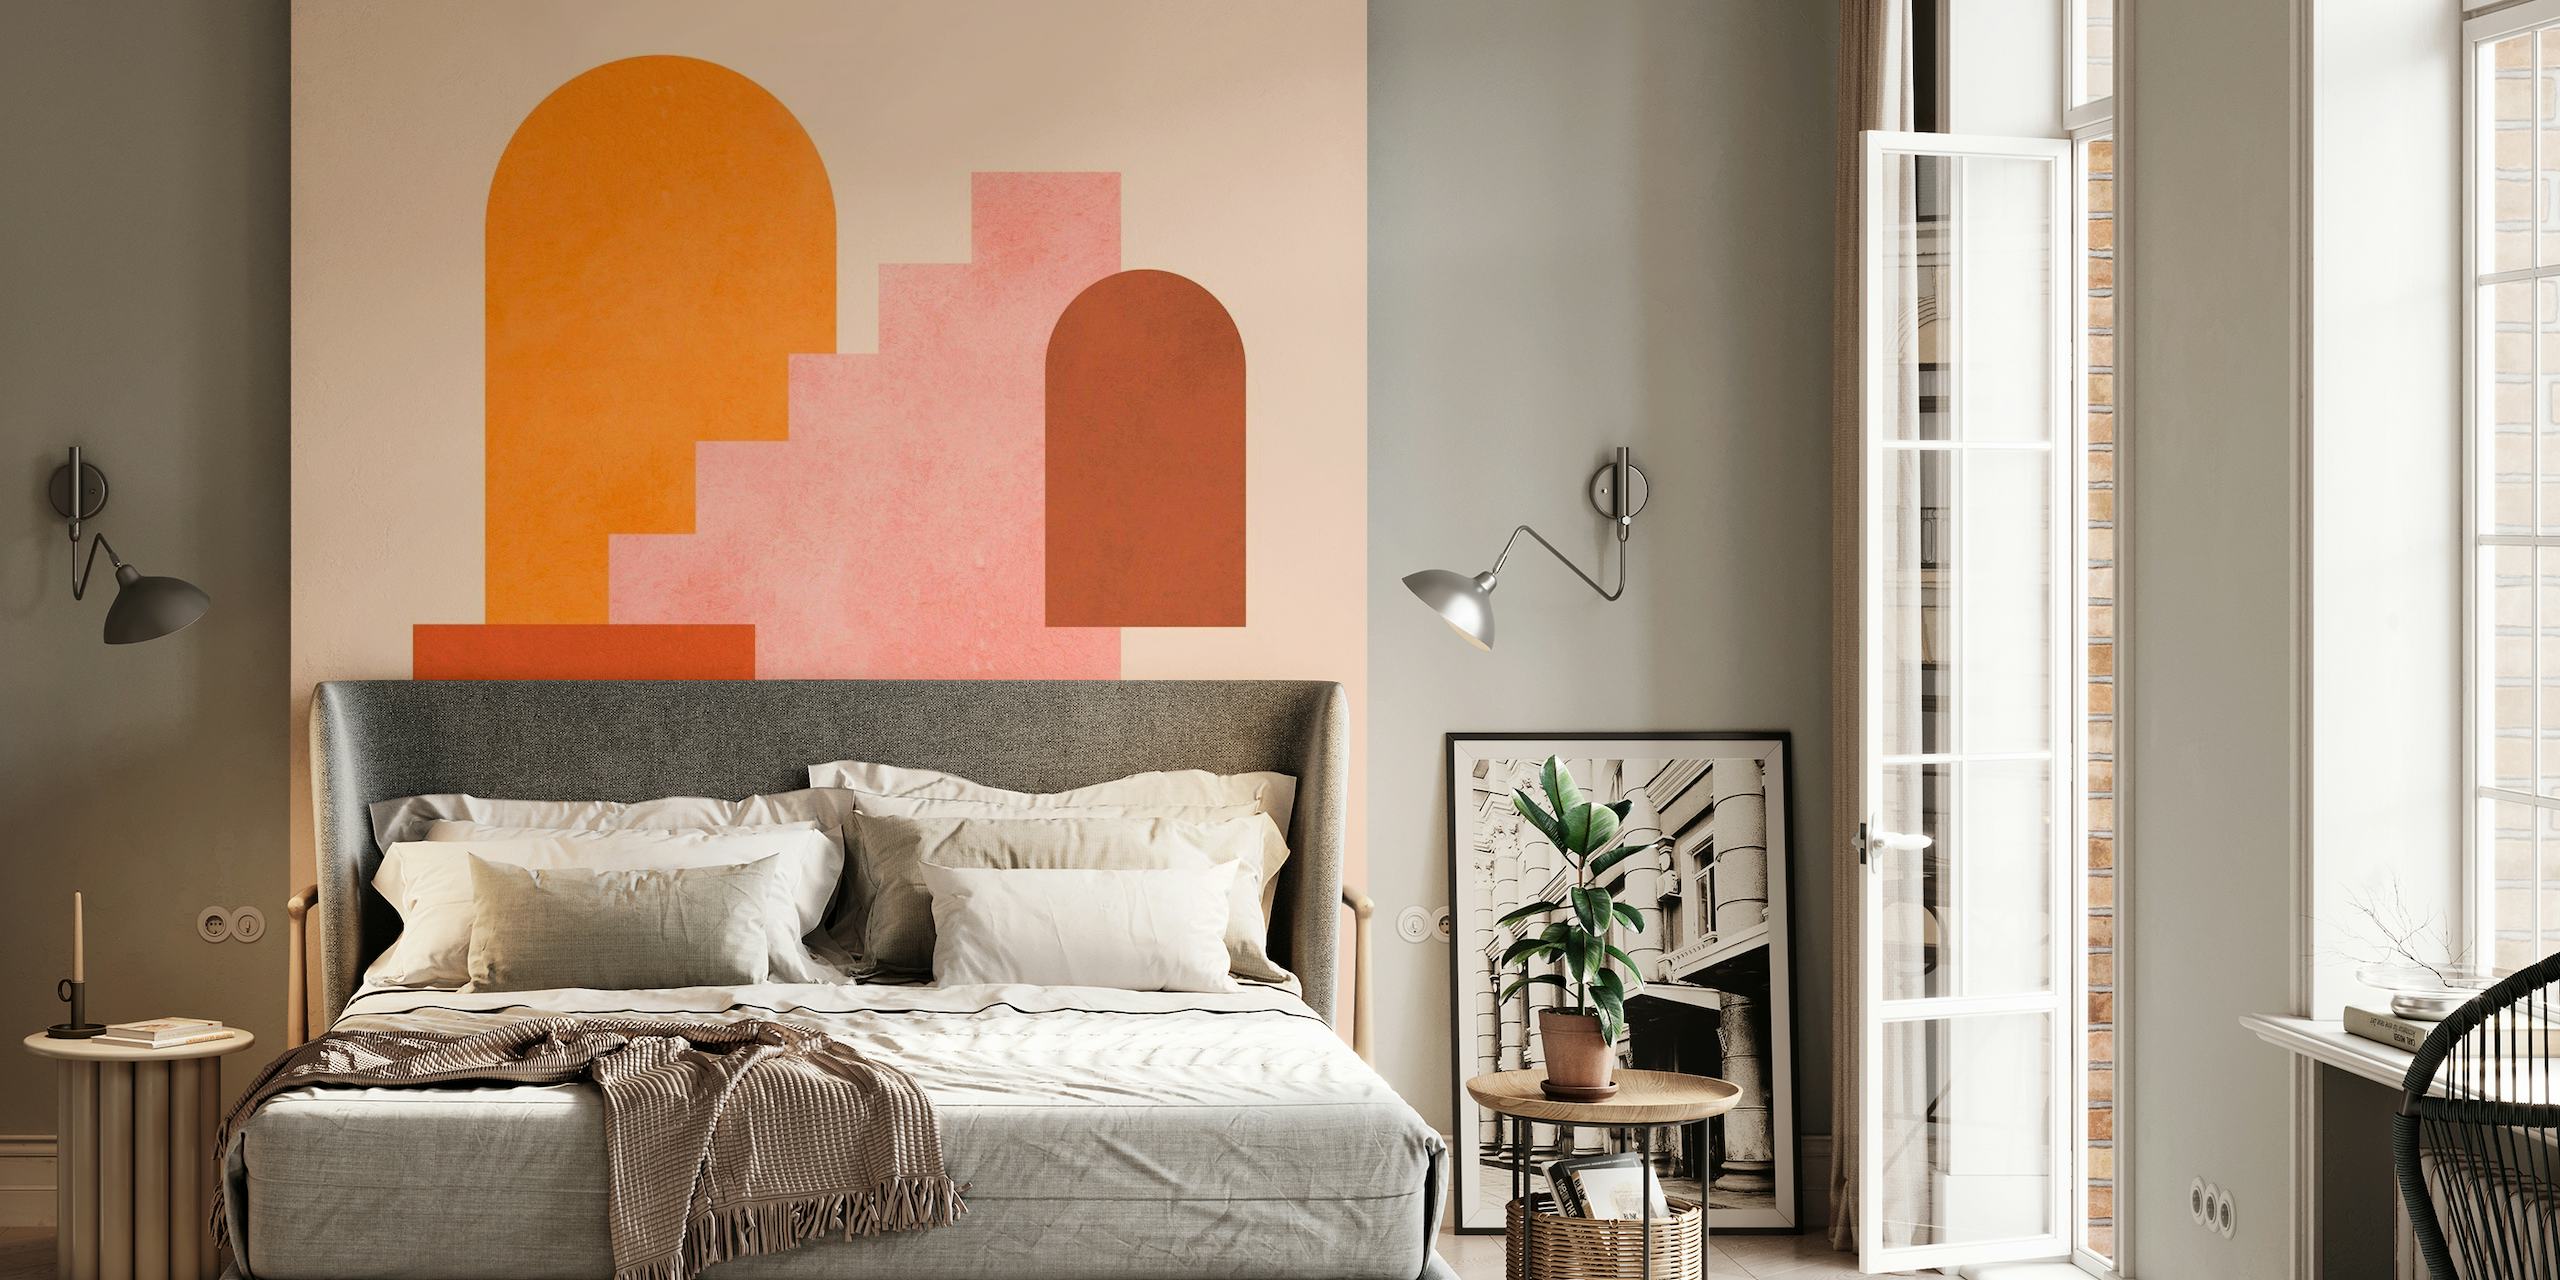 Papier peint mural de formes géométriques abstraites dans des tons orange, rose et terre cuite.